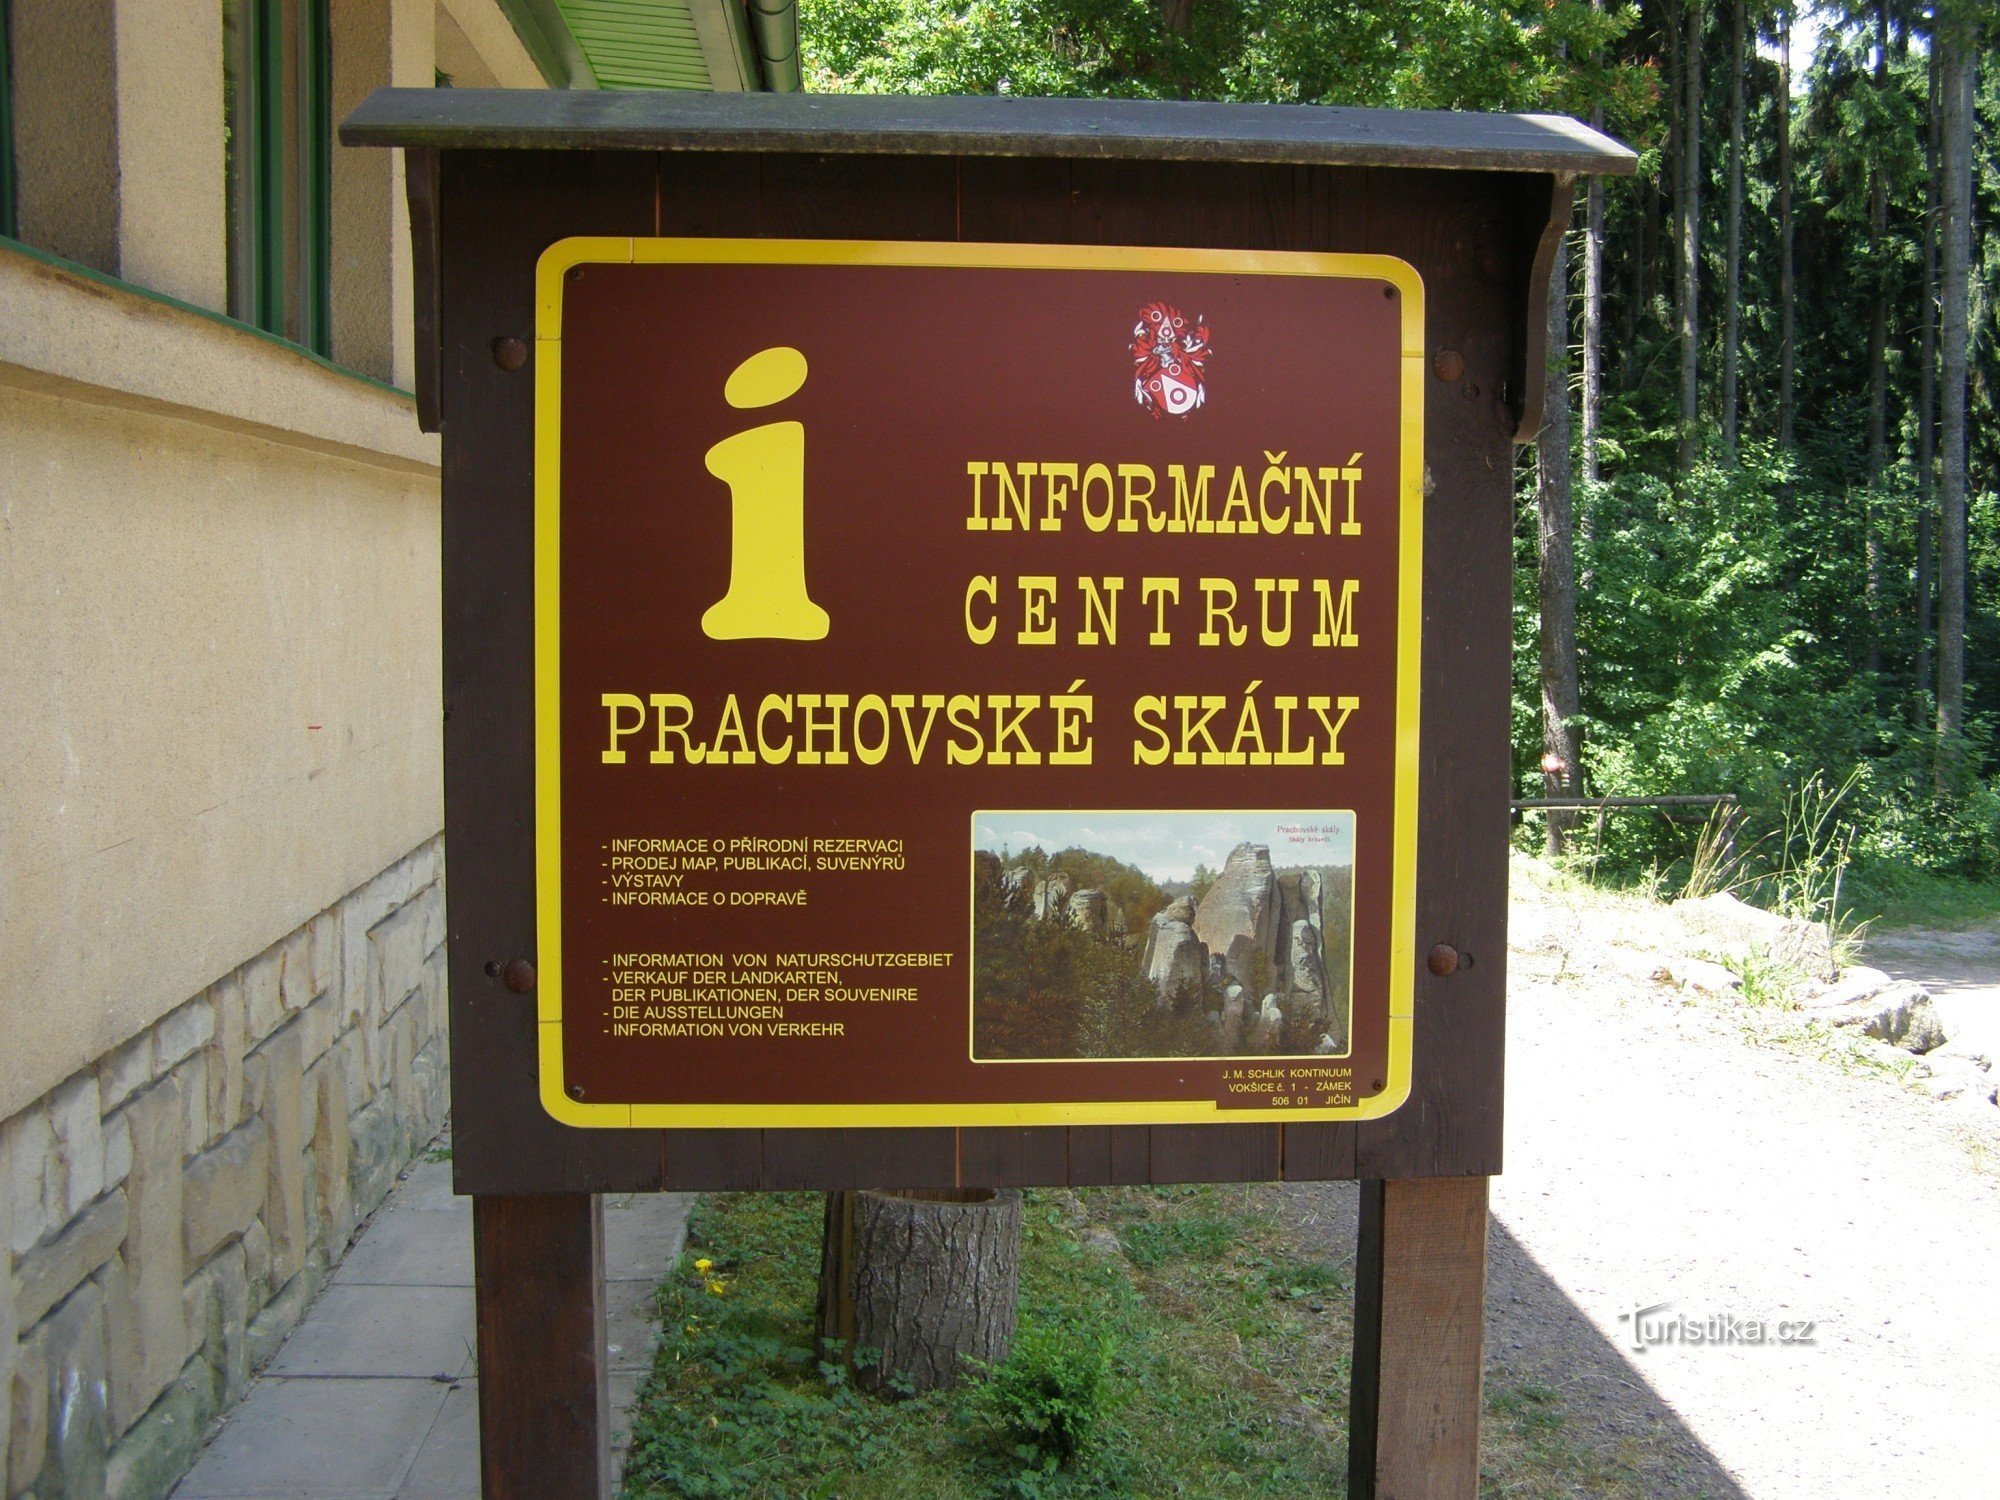 Centro de informações Prachovské skály